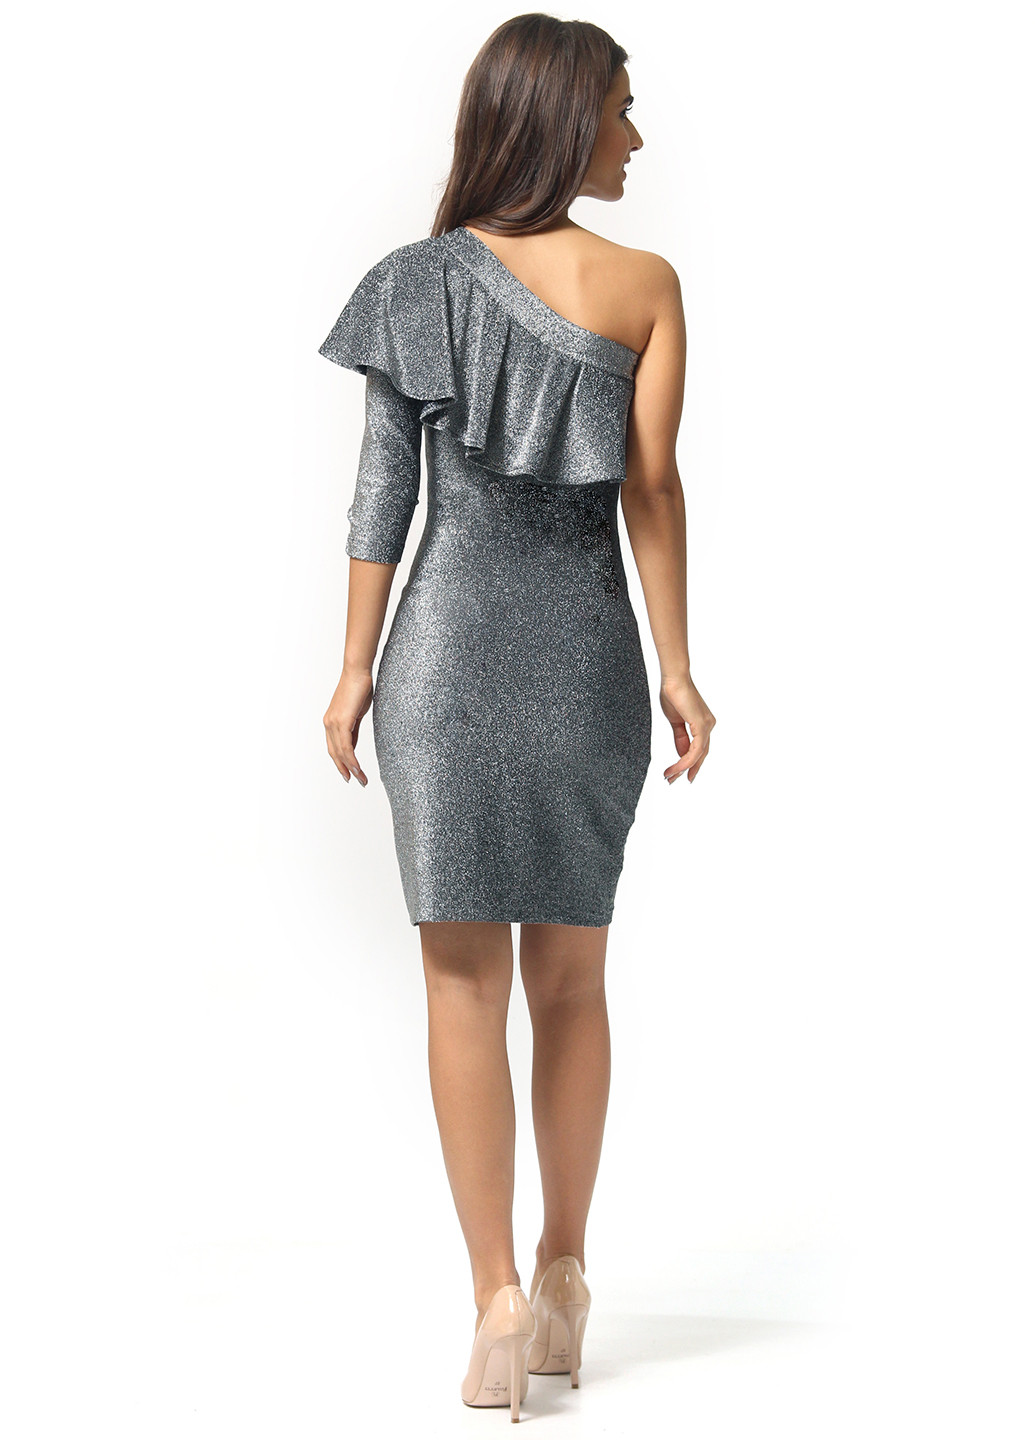 Серебряное коктейльное платье бандажное Agata Webers меланжевое